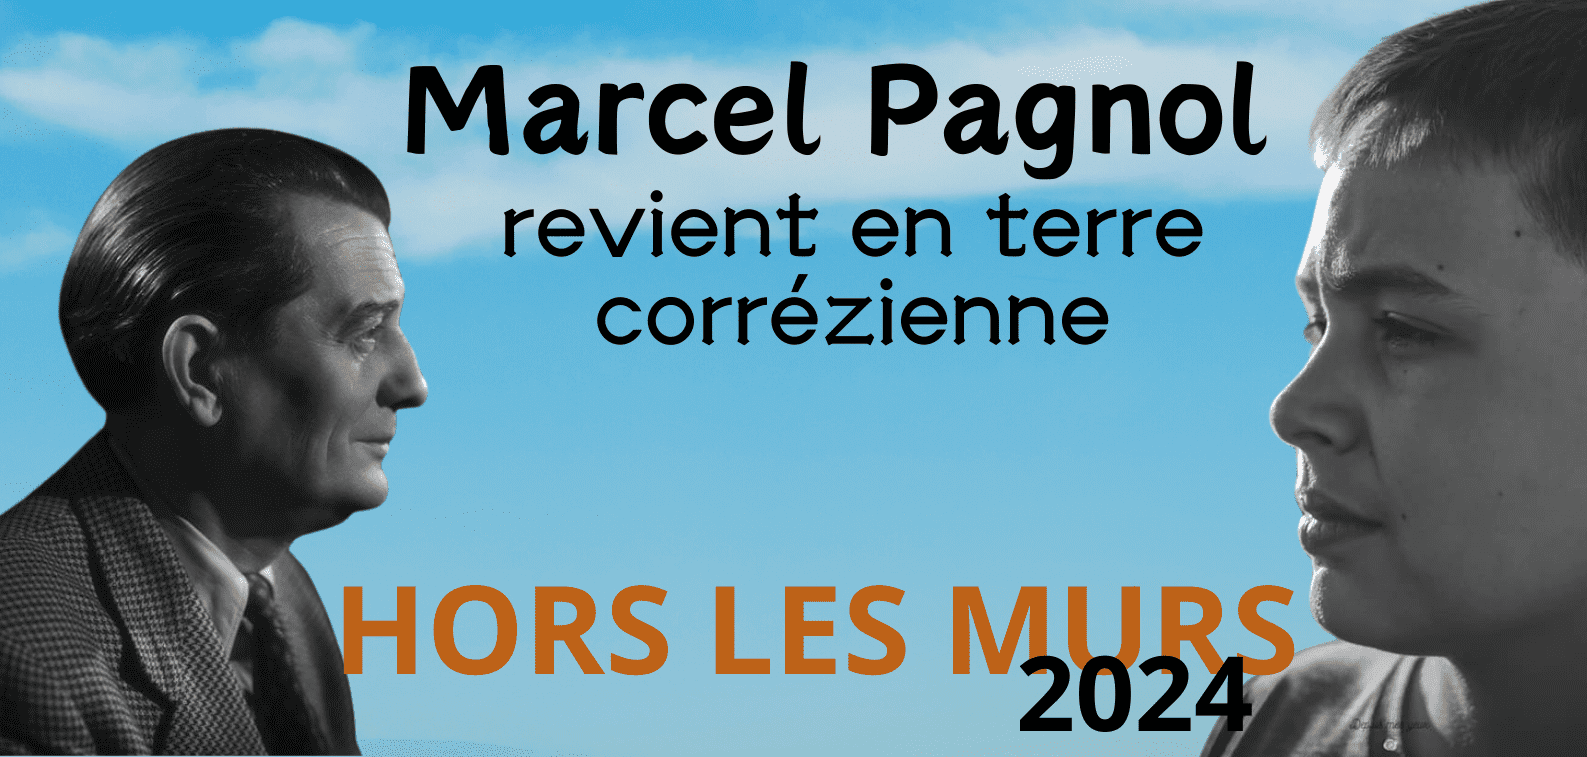 Marcel Pagnol 2e saison